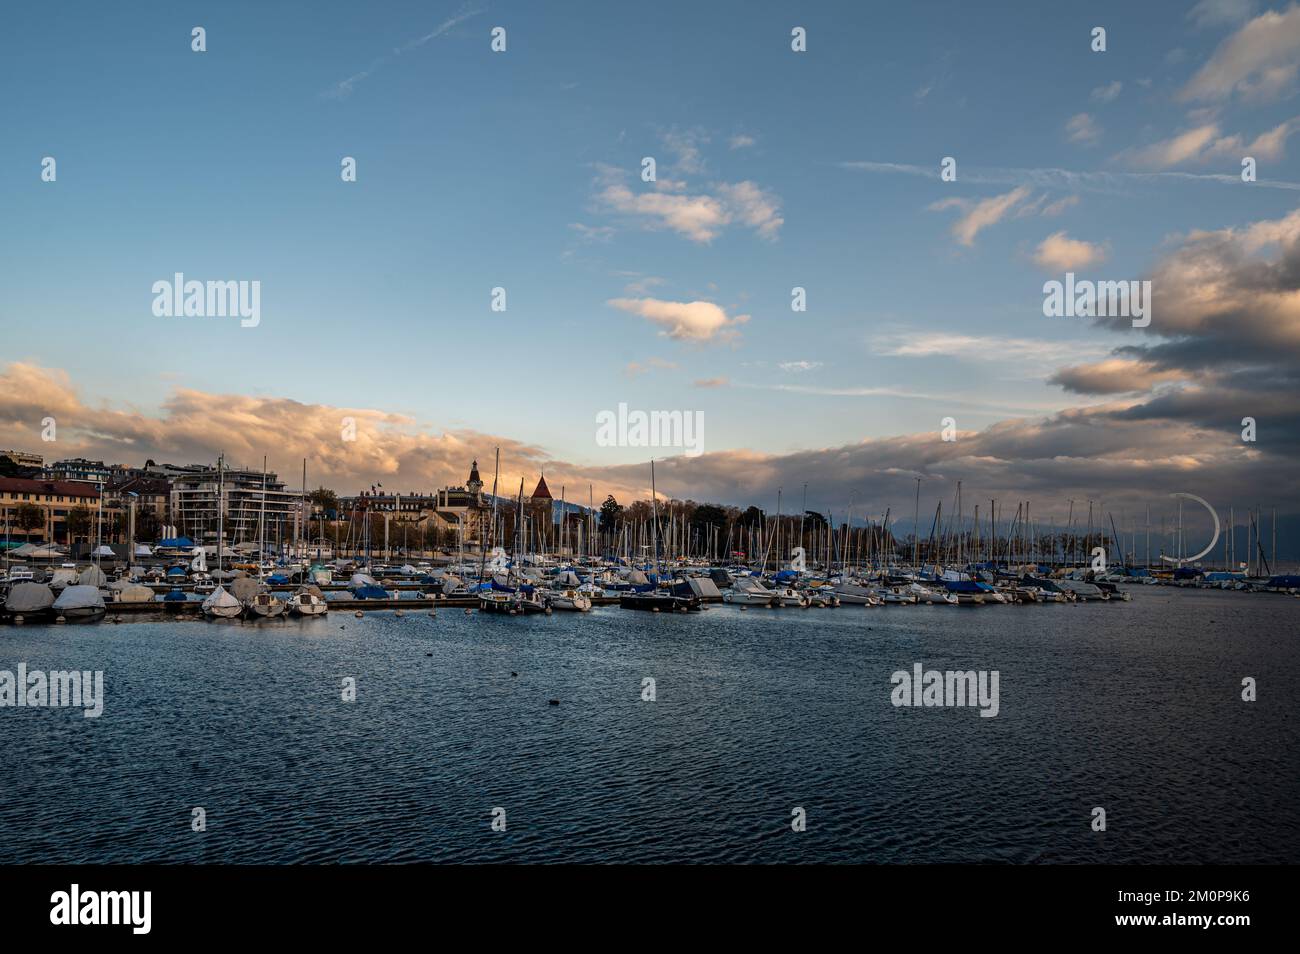 Landschaft mit Booten, Architektur und Wolken. Hafen von Ouchy. Genfer See, Lausanne, Schweiz. Schönheit in der Natur. Stockfoto